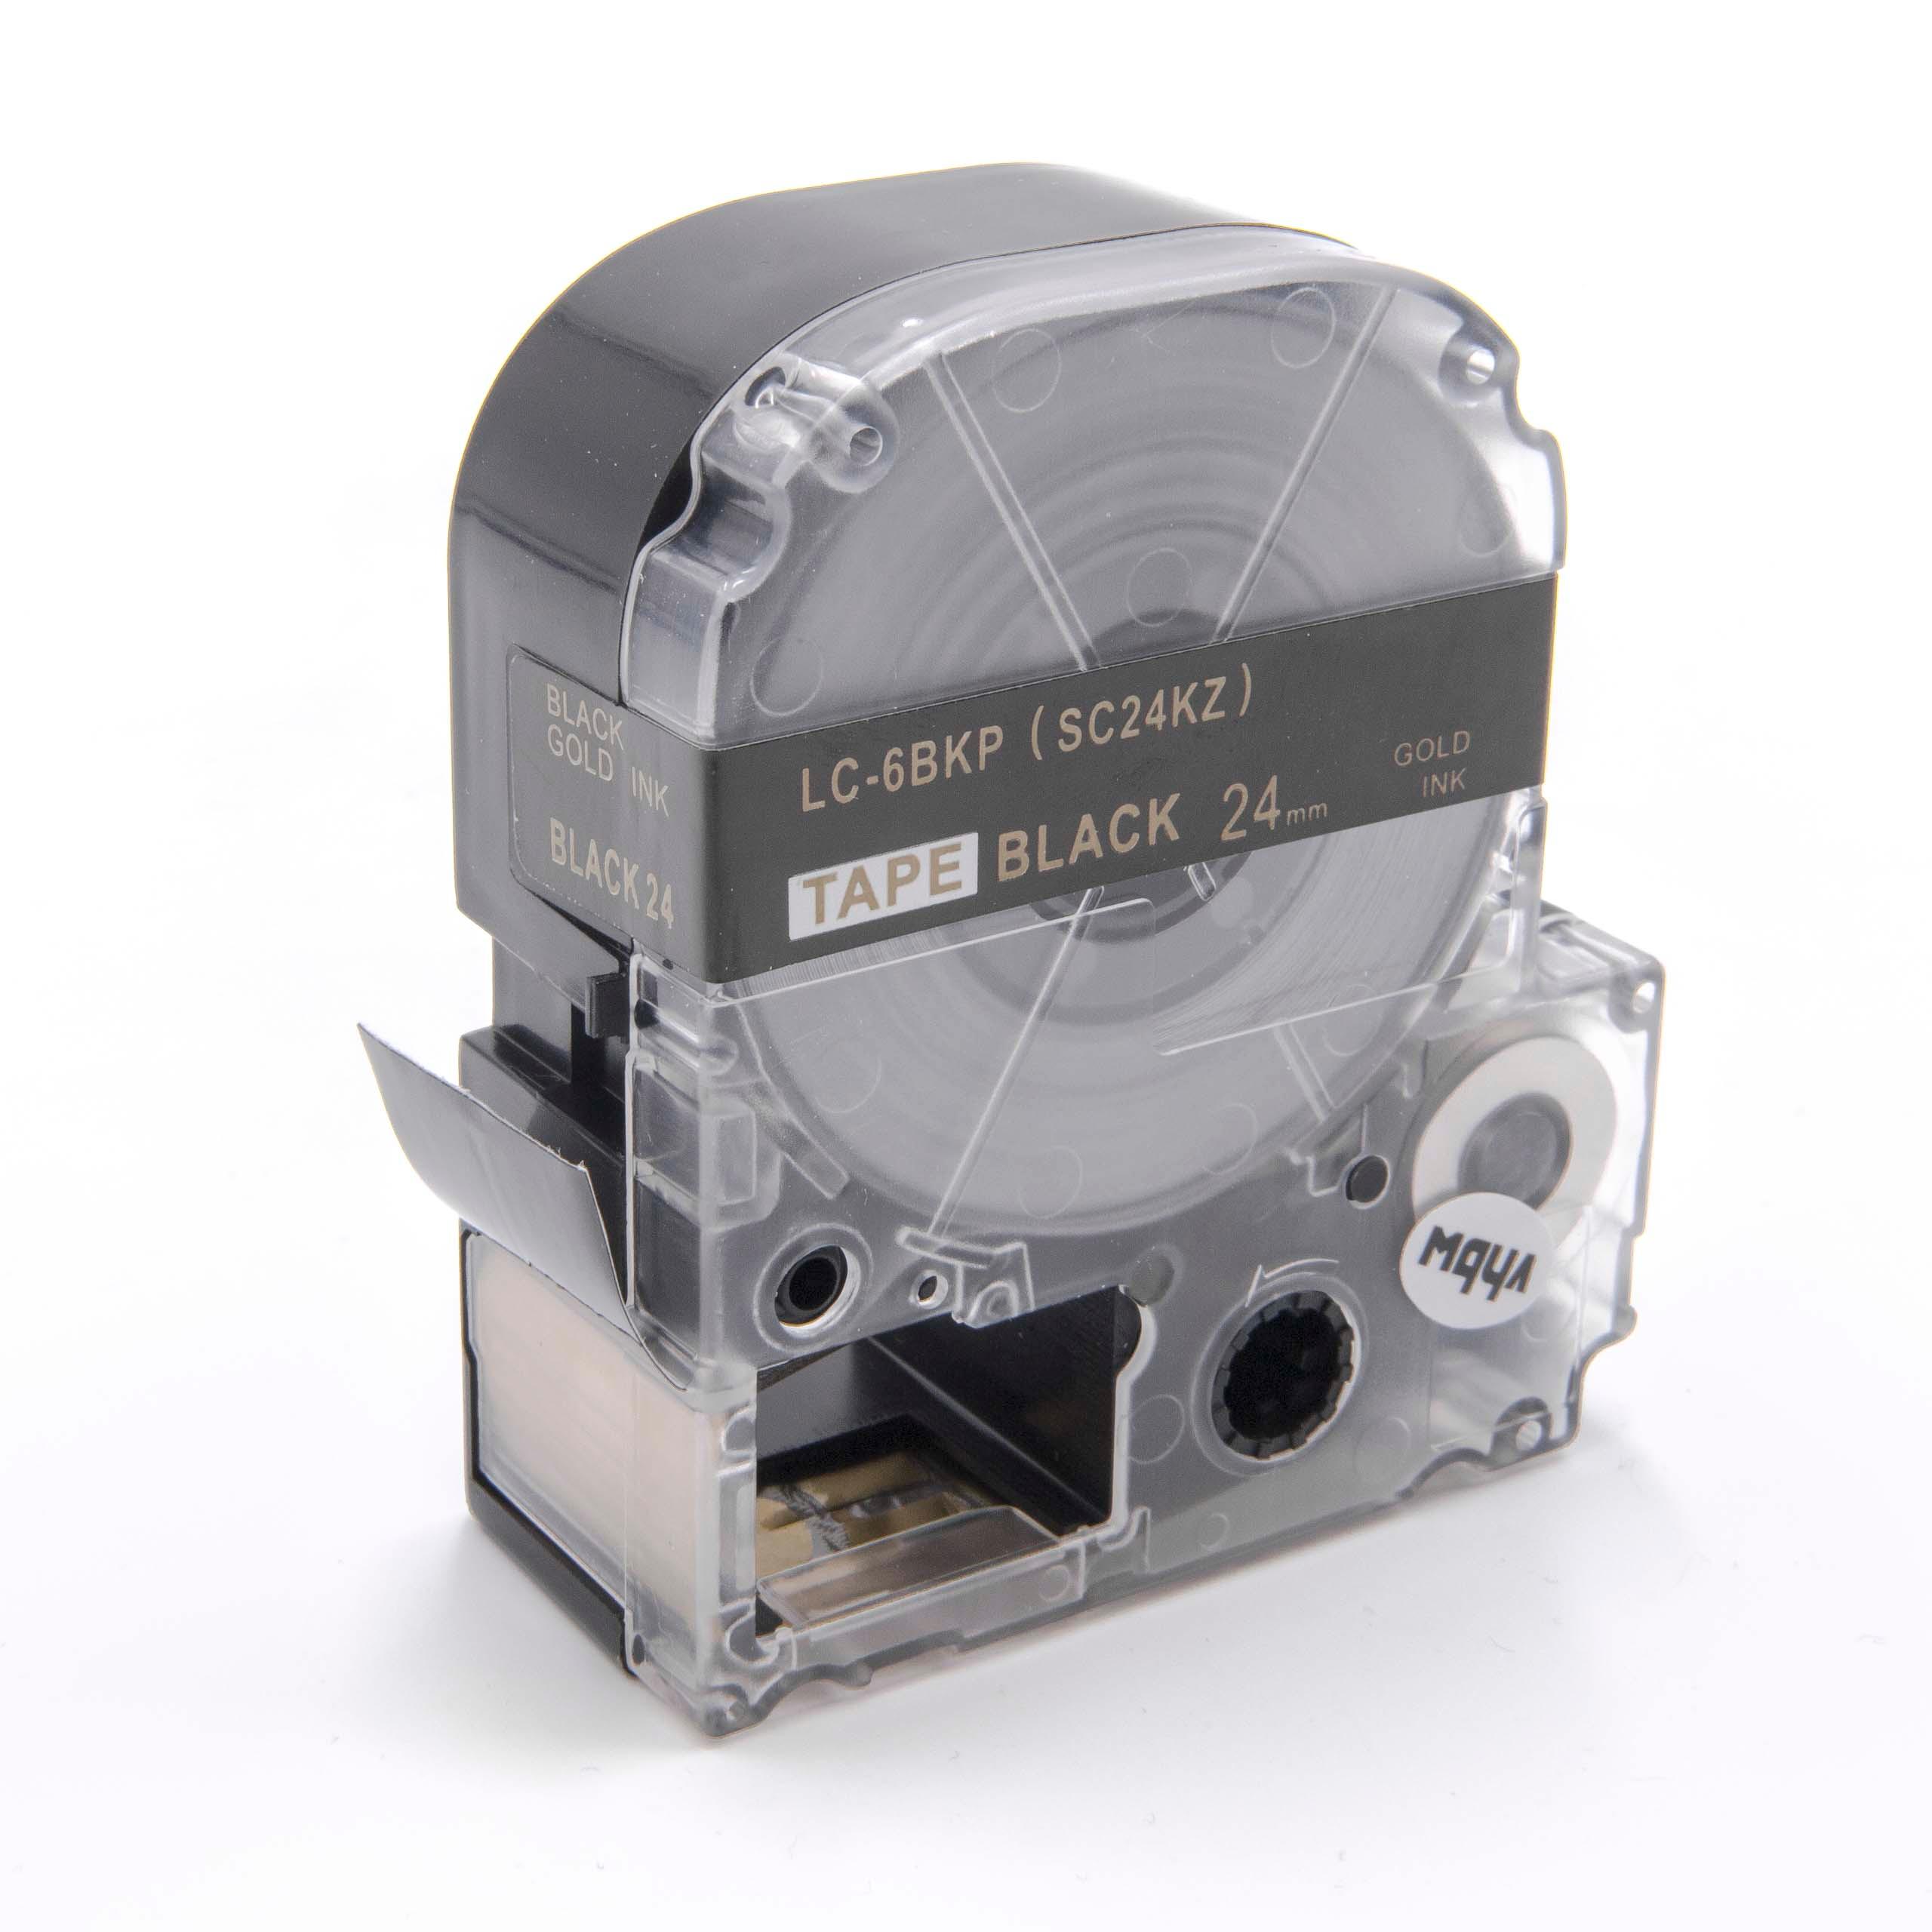 Cassetta nastro sostituisce Epson LC-6BKP per etichettatrice Epson 24mm dorato su nero